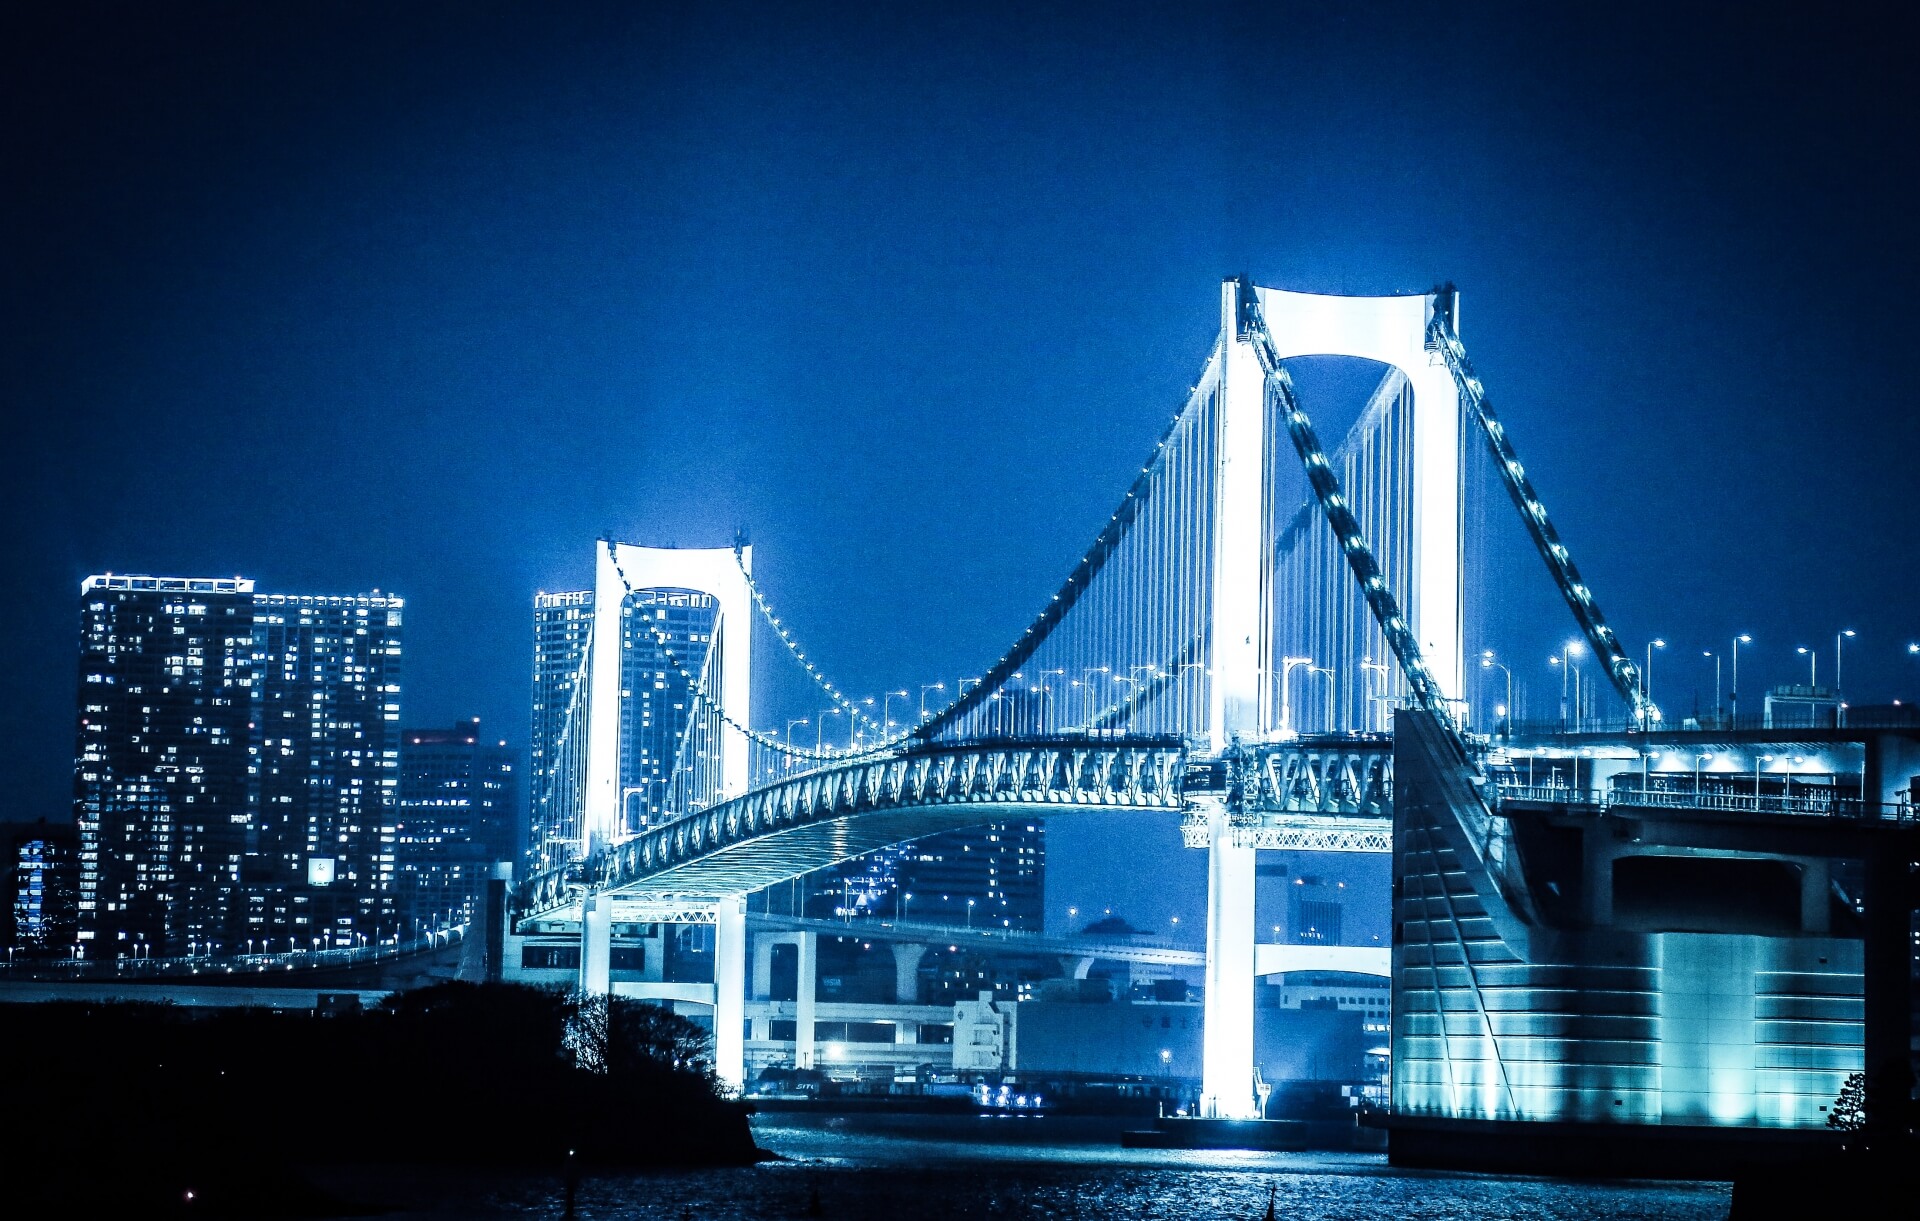 貸切ジャンボタクシー（ワゴンタクシー）で気兼ねなく東京の夜の観光を